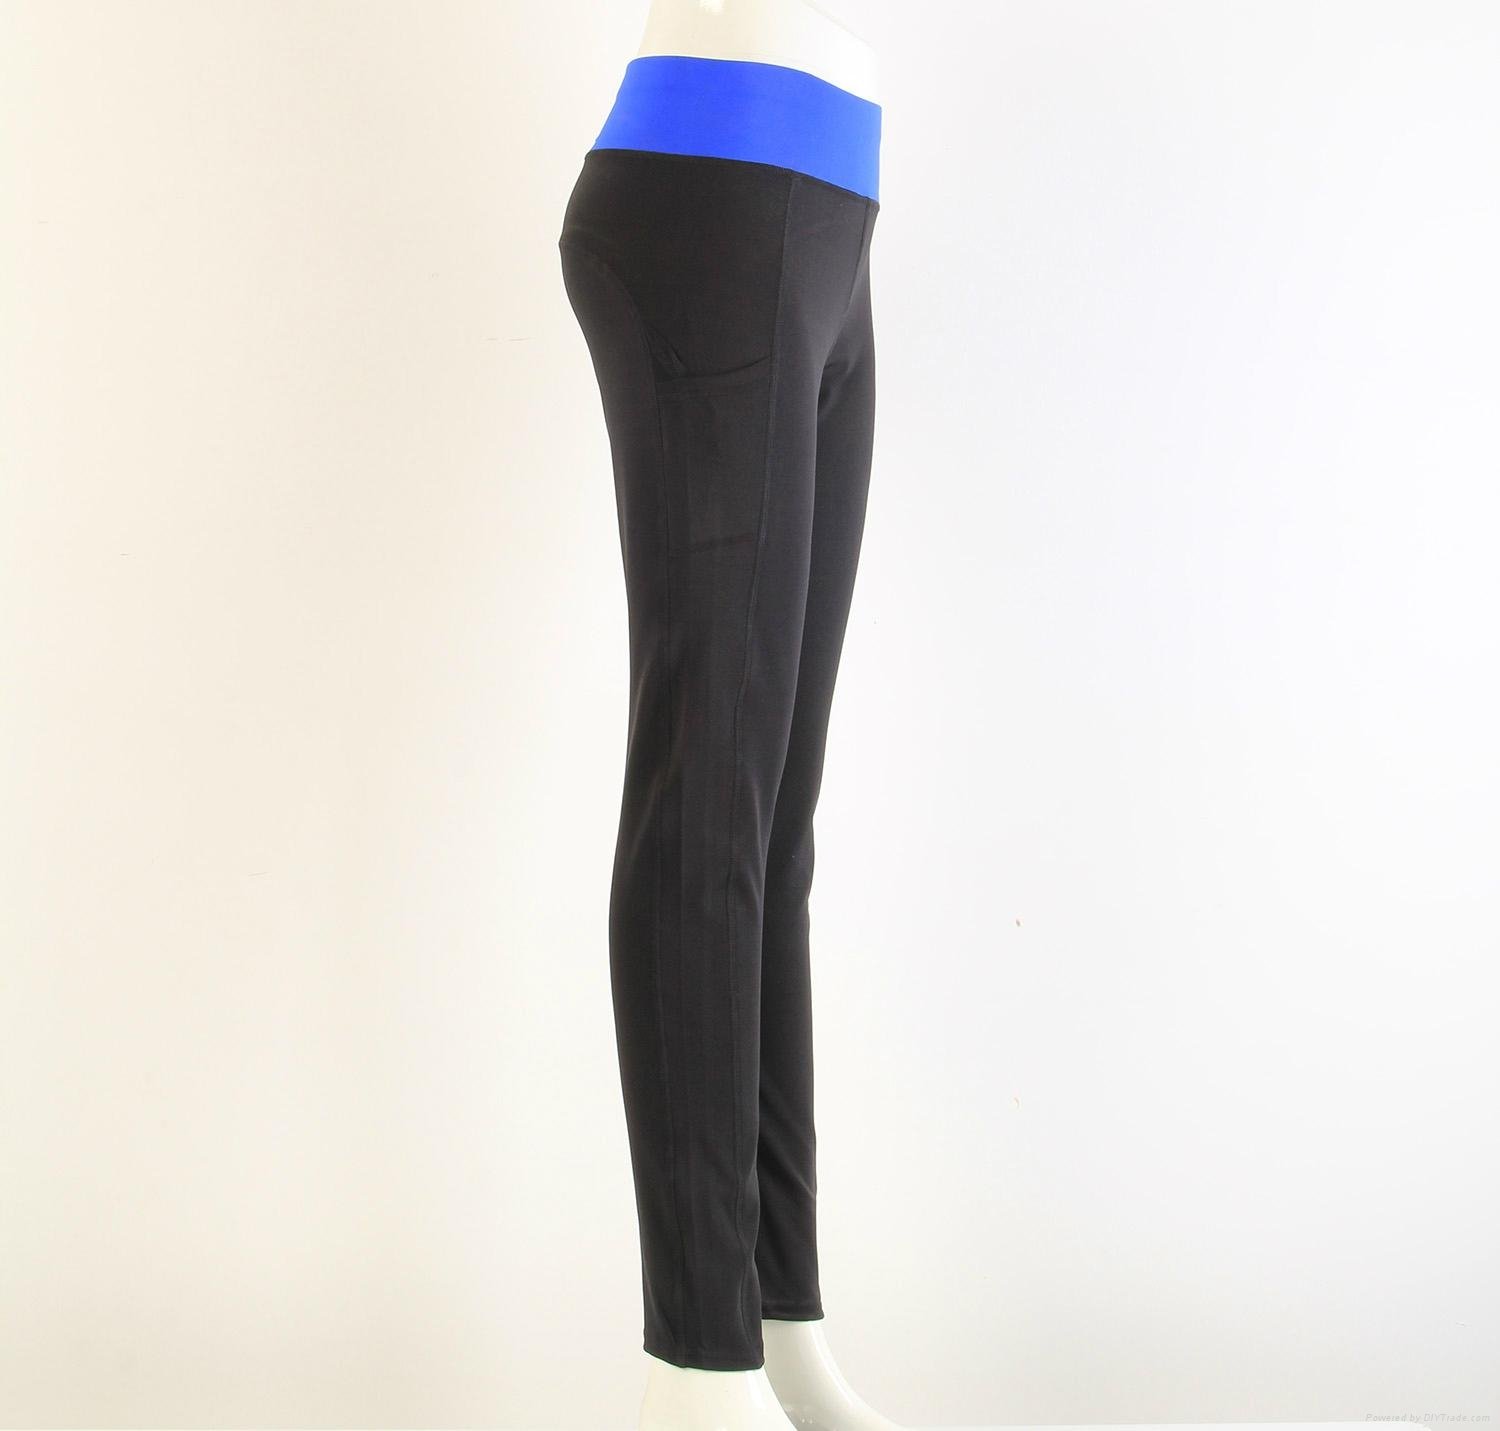 New Black Yoga Tight Leggings Yoga Sports Pants 2